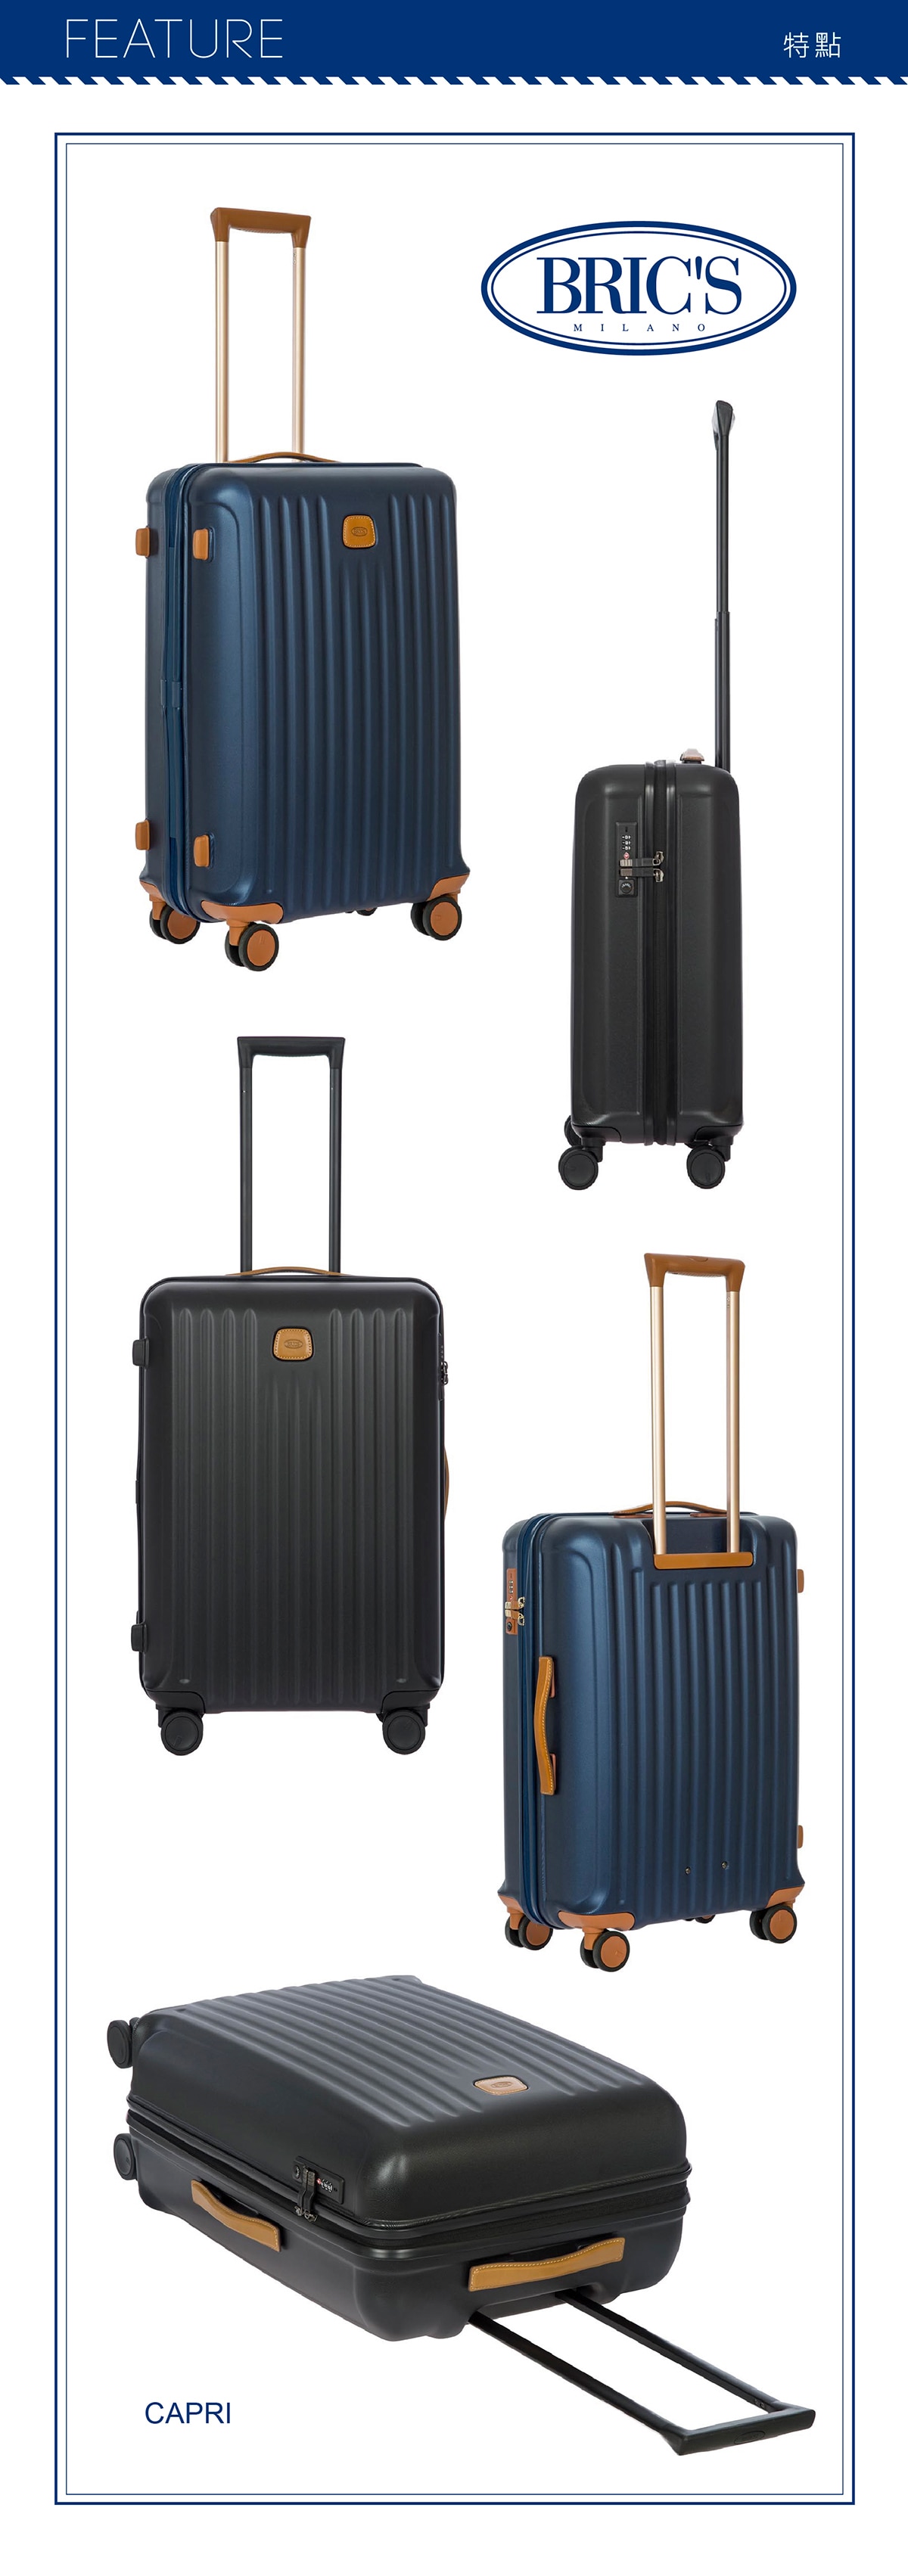 BRIC'S 27吋深藍色行李箱,TSA海關安全鎖,新型的TSA海關安全密碼鎖,讓您在海外旅行也能安心輕鬆過關.